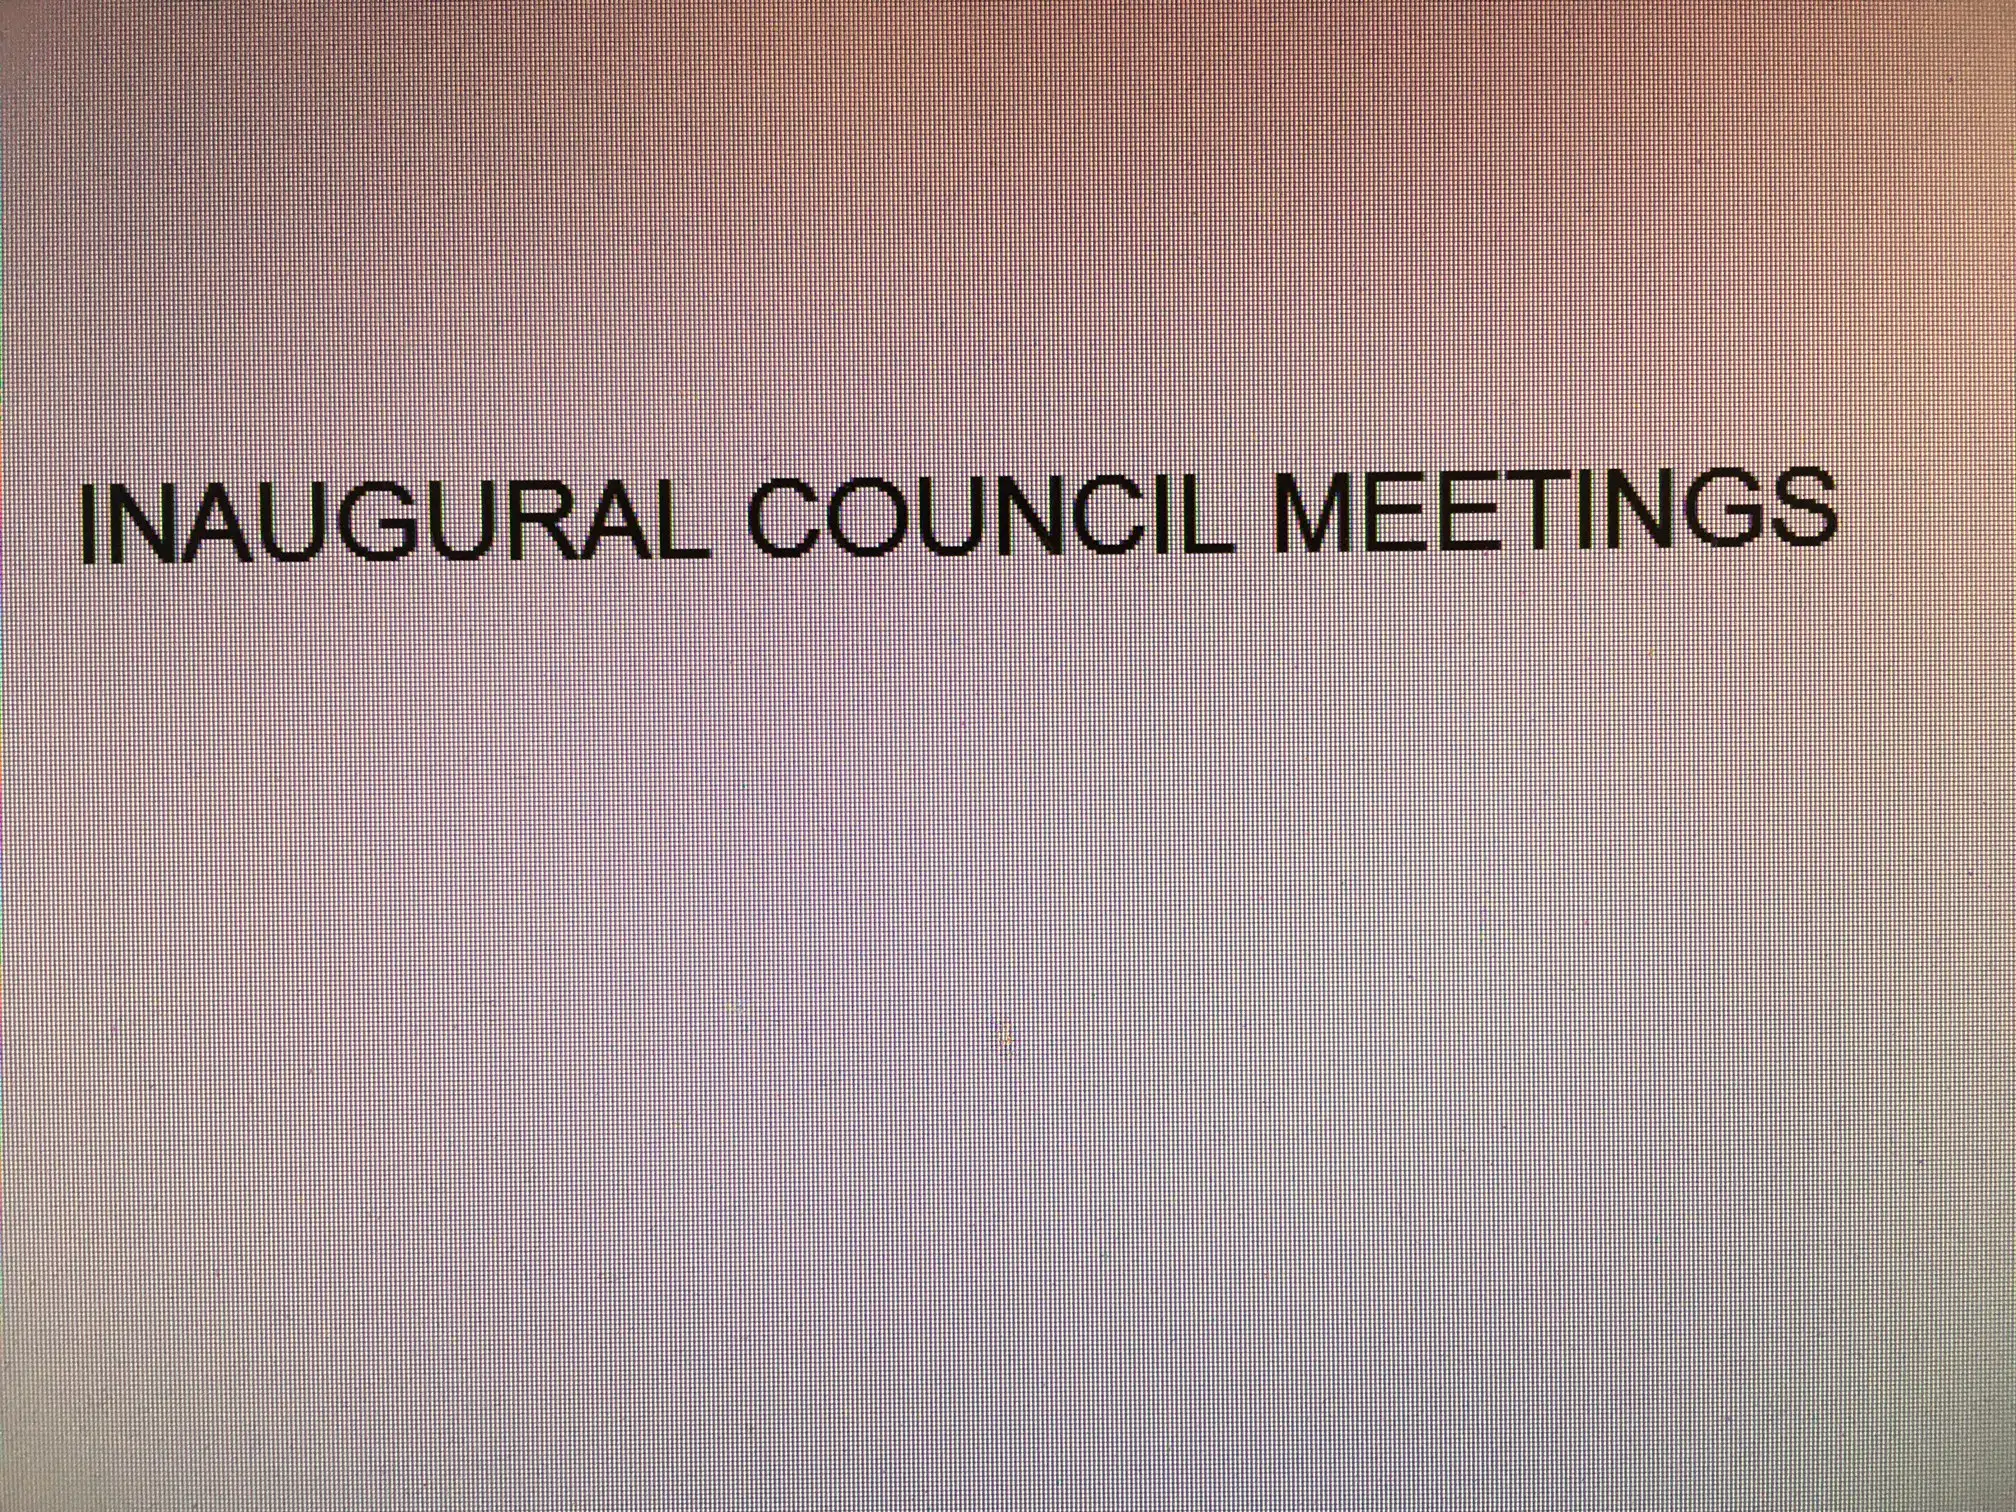 Inaugural meetings galore